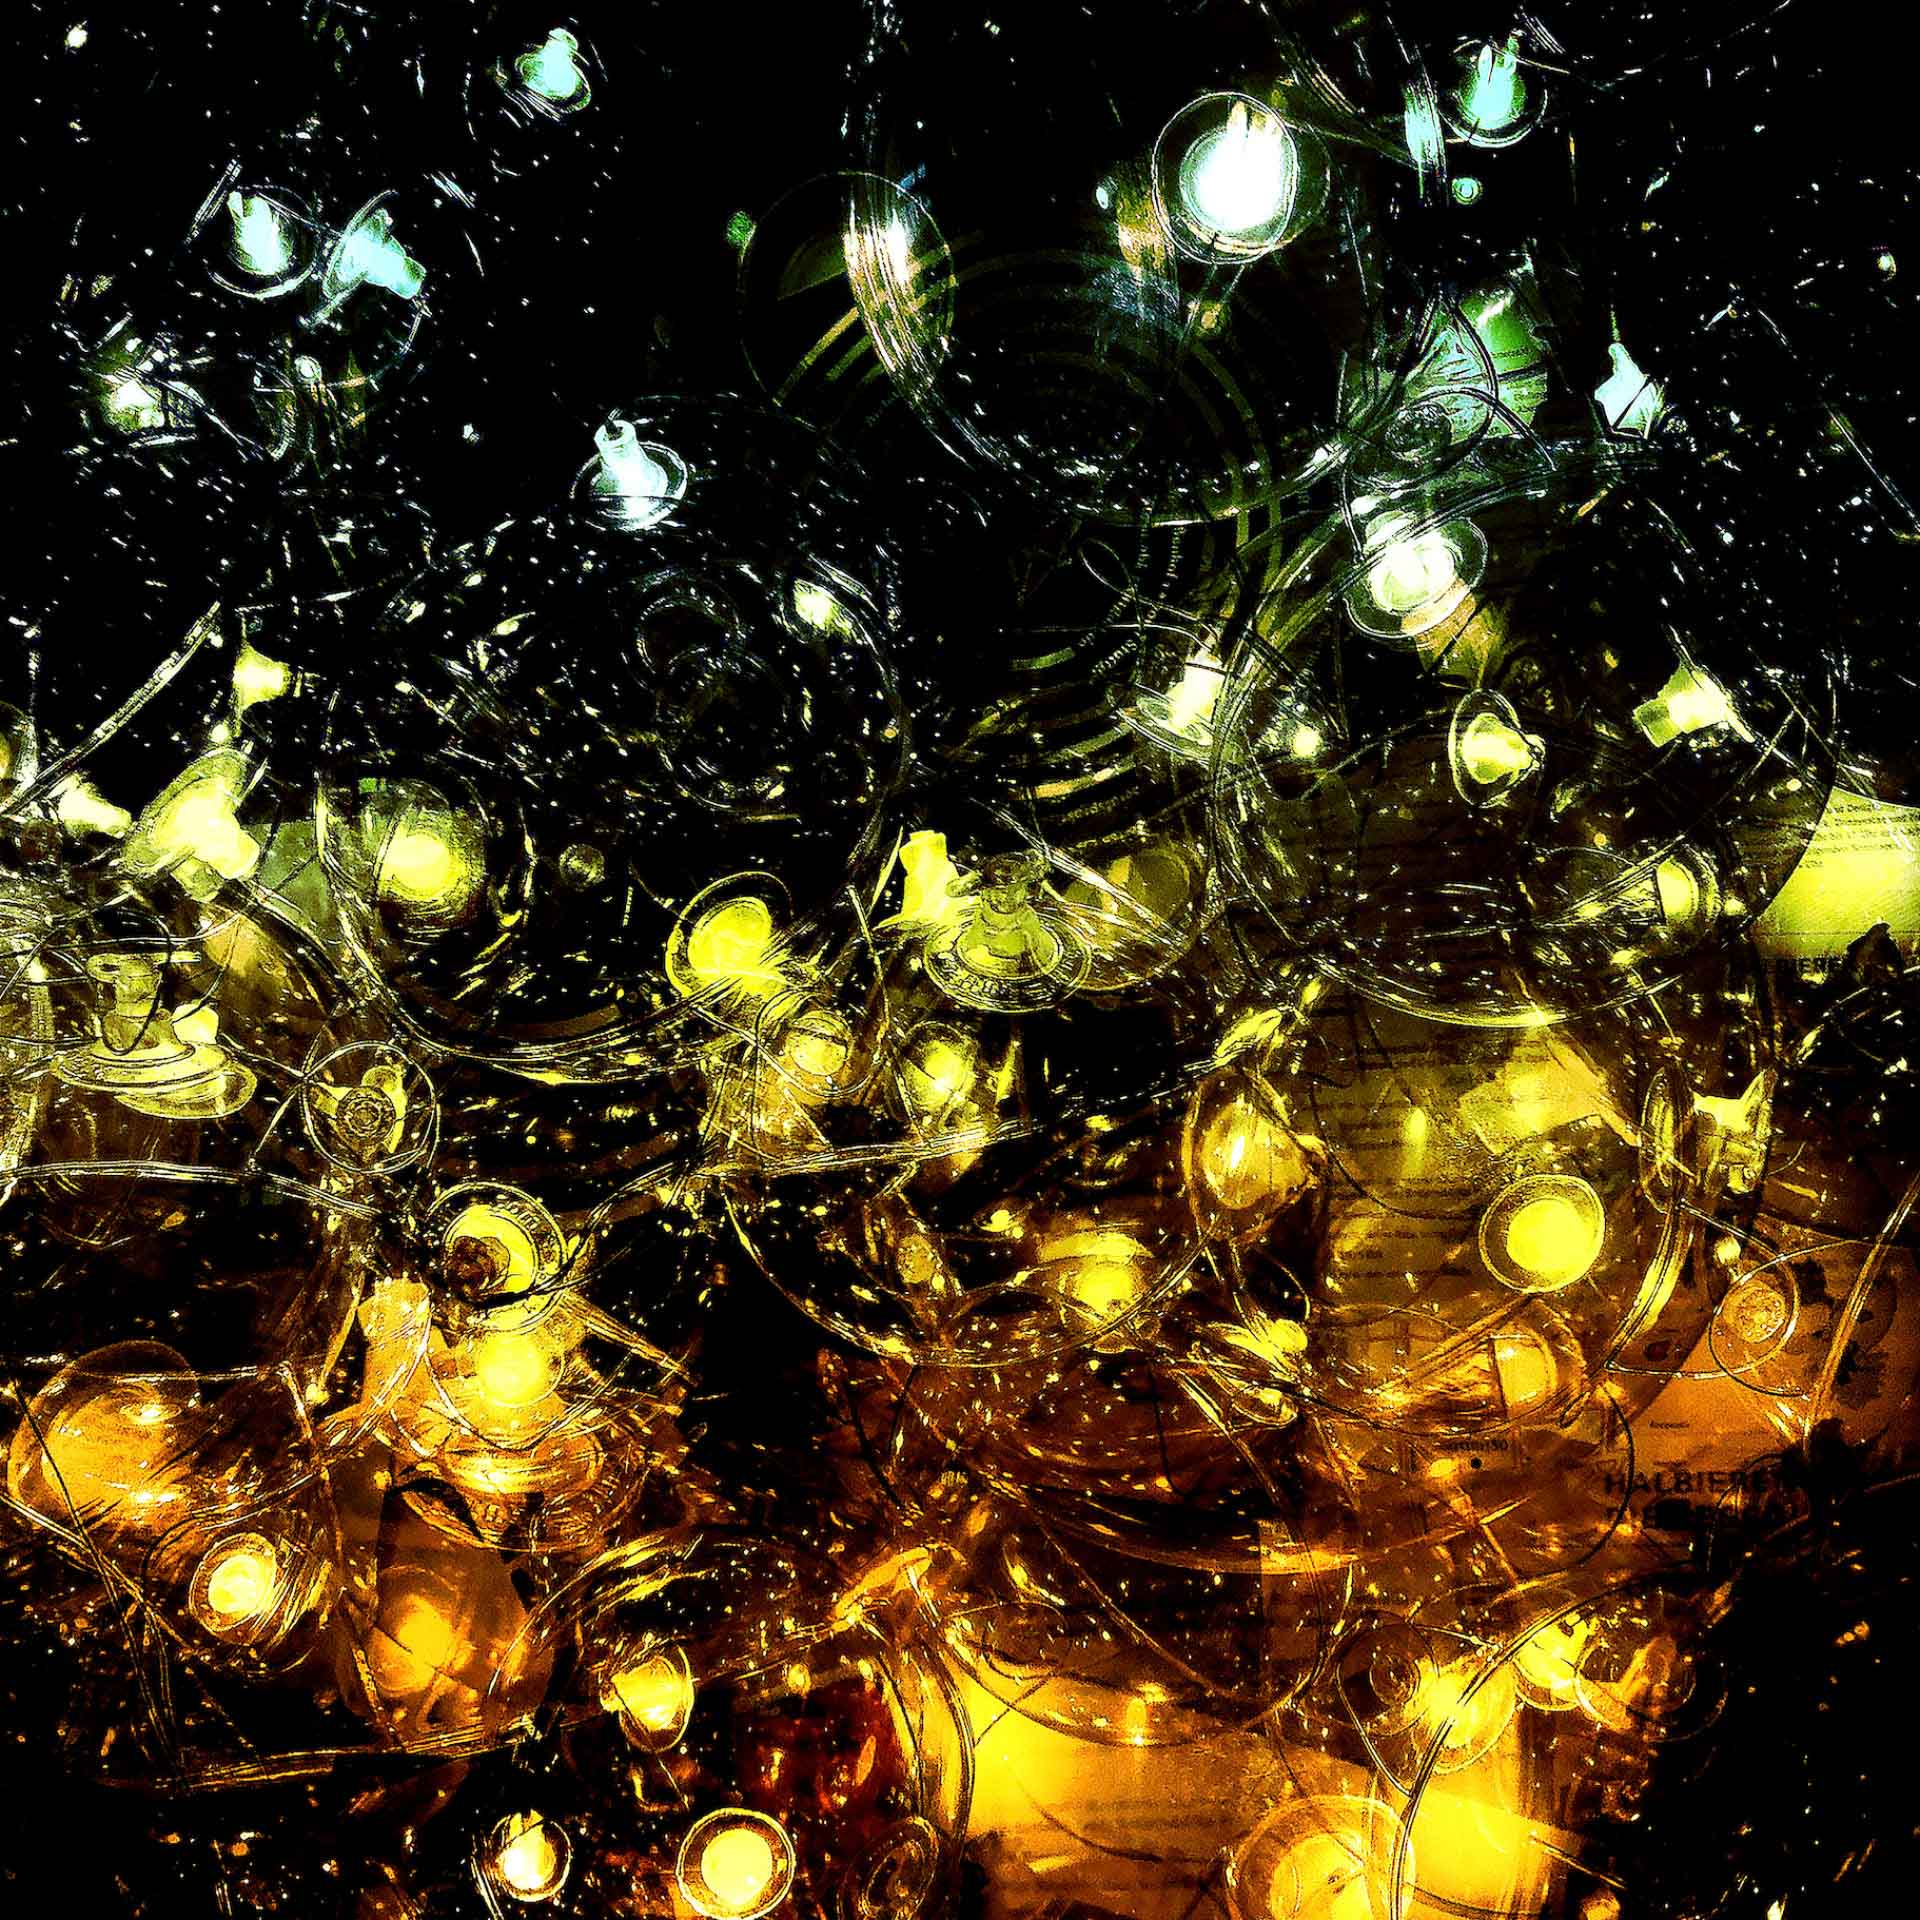 artnorama - Glasball Universe